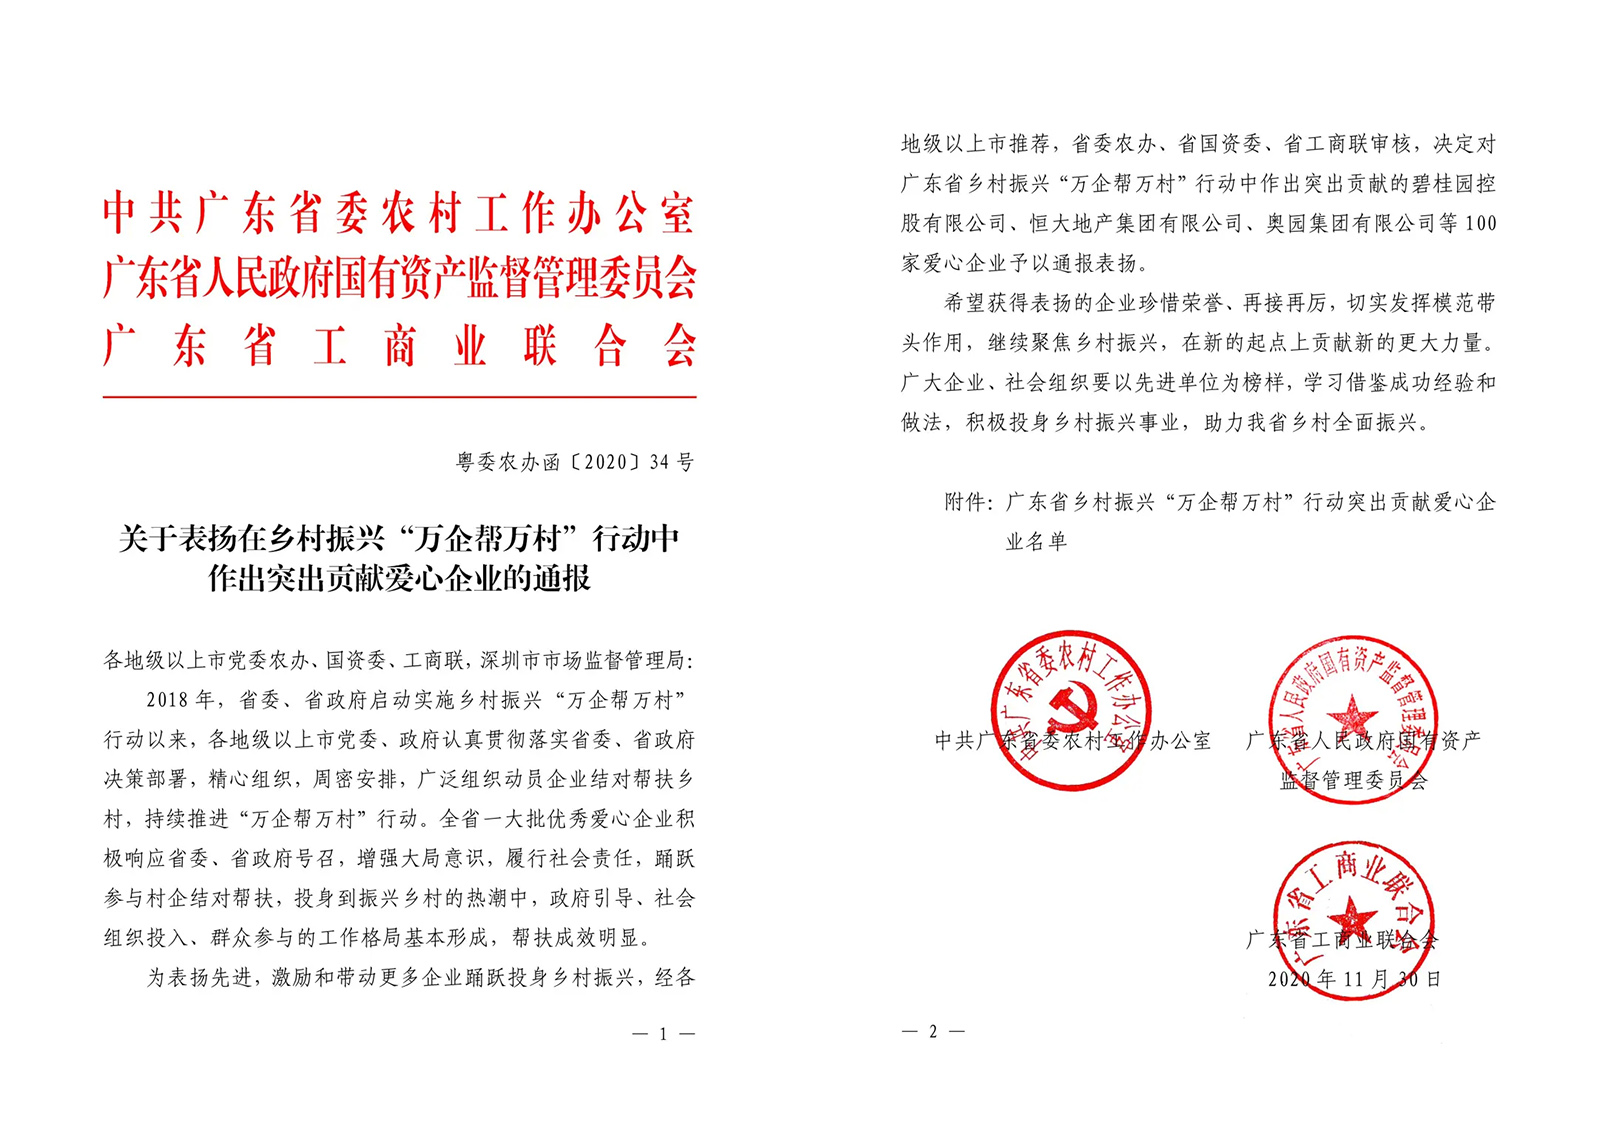 亚搏手机版app下载体育官网瓷砖荣获2021中国陶瓷品牌大会两项重量级大奖